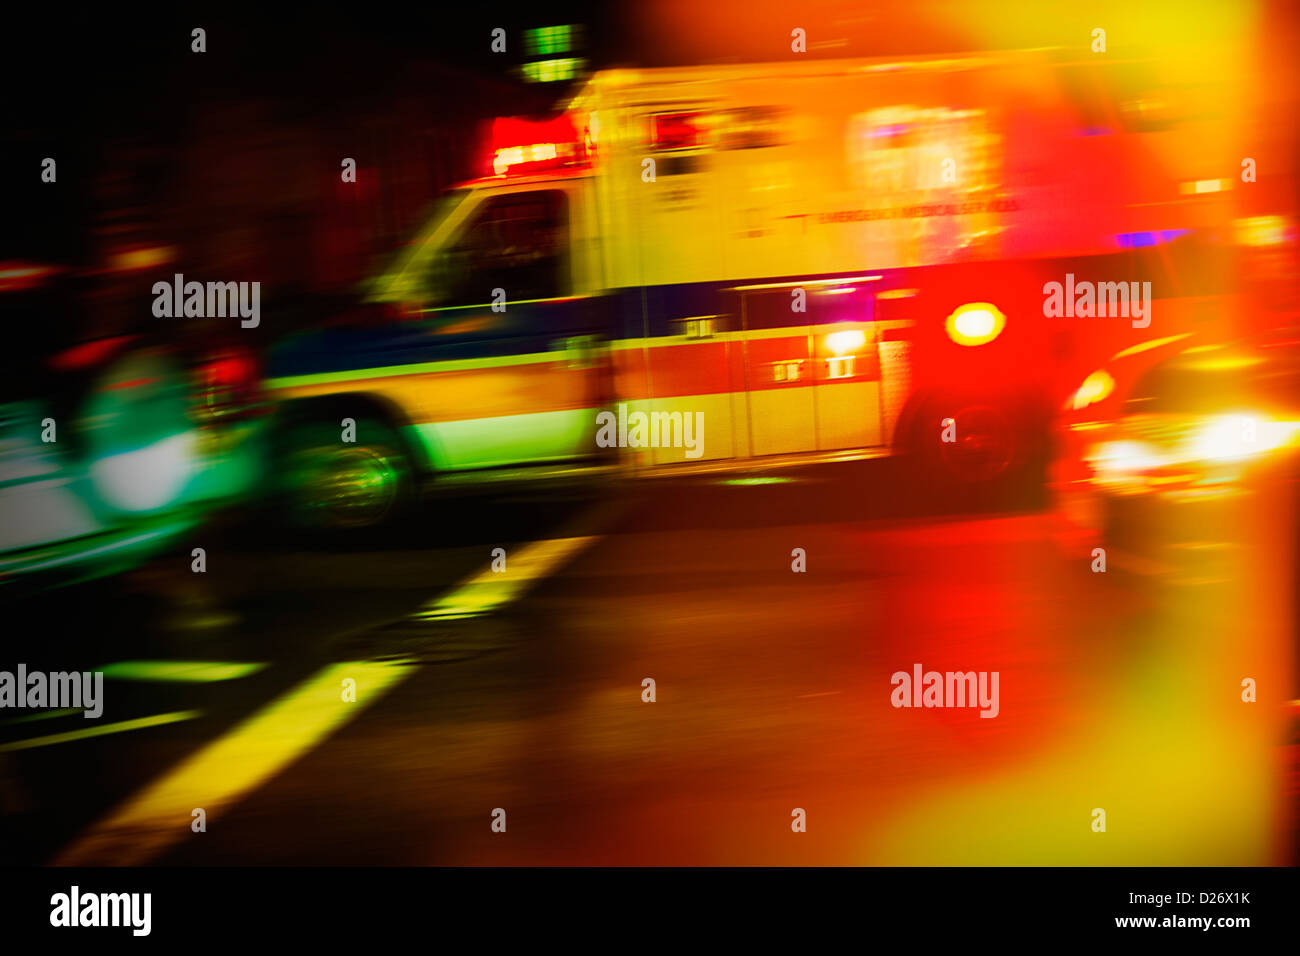 USA, New York City, Ambulance at night Stock Photo